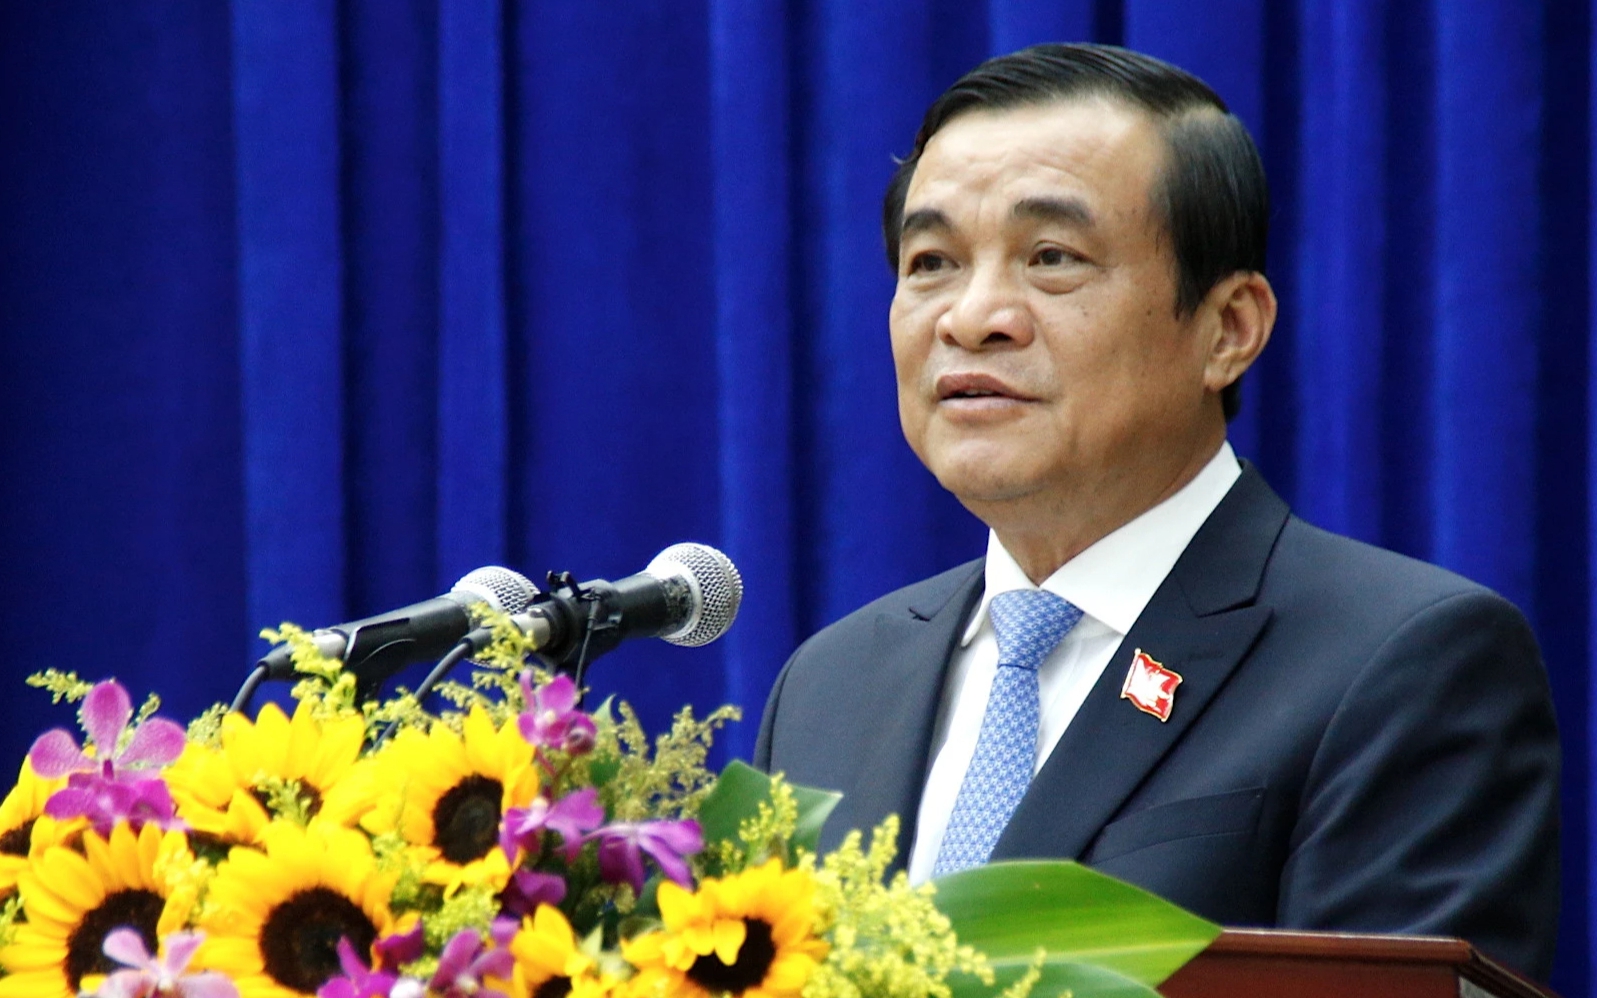 Đề nghị Bộ Chính trị kỷ luật Bí thư Tỉnh ủy Quảng Nam Phan Việt Cường